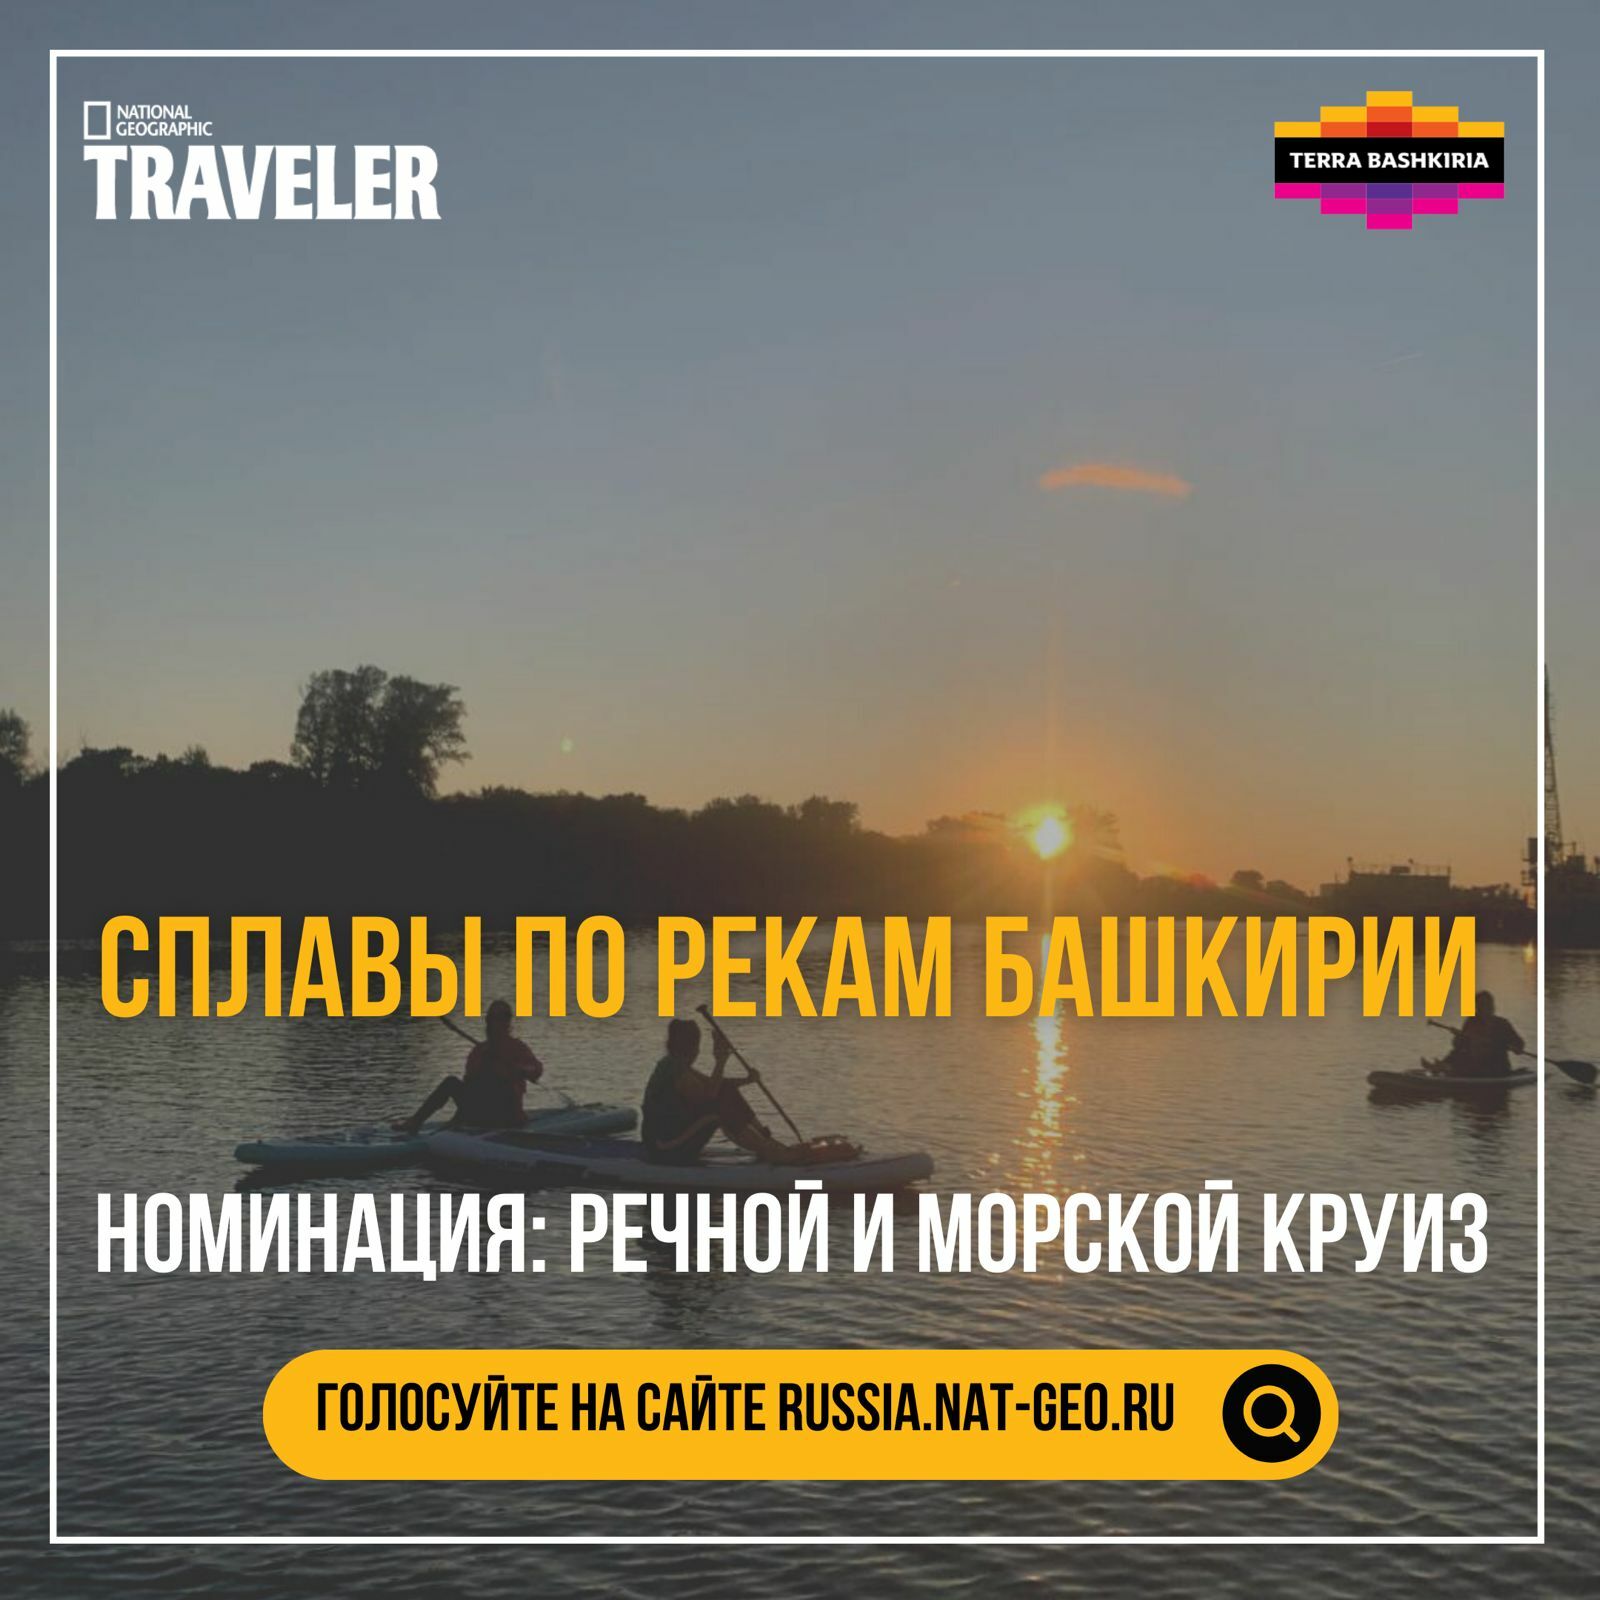 До 31 октября можно проголосовать за Республику Башкортостан в туристическом конкурсе «Сокровища России» журнала National Geographic Traveler